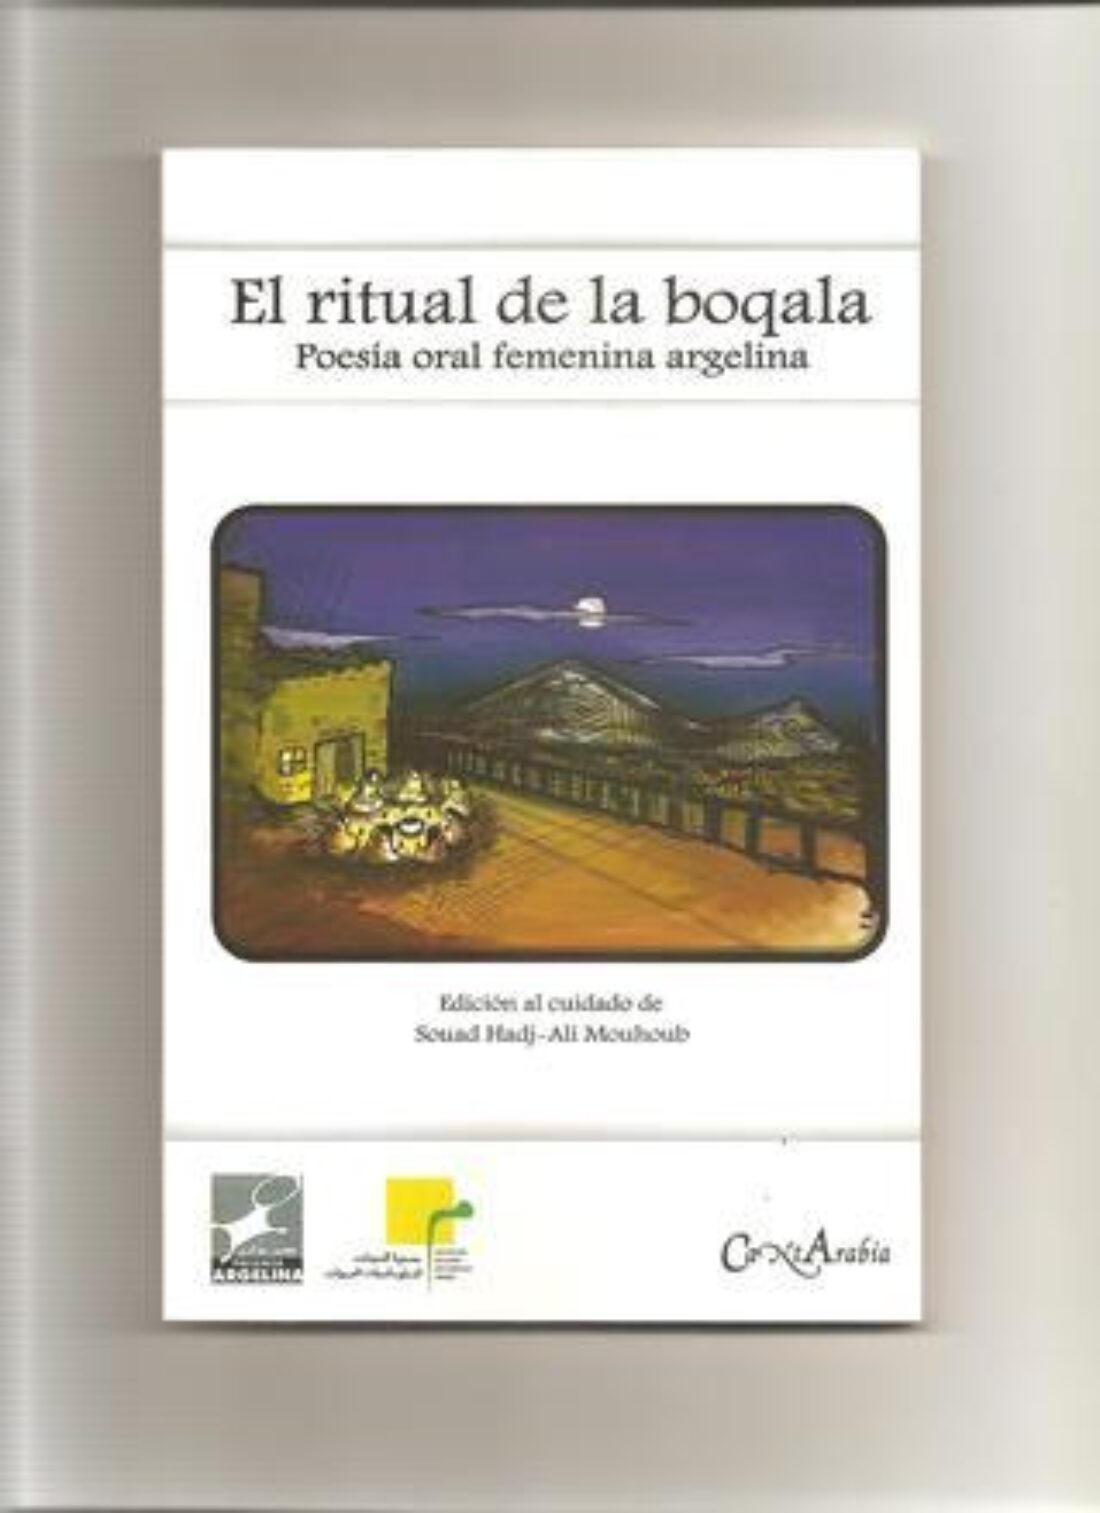 Madrid: «El ritual de la boqala. Poesía oral femenina argelina»